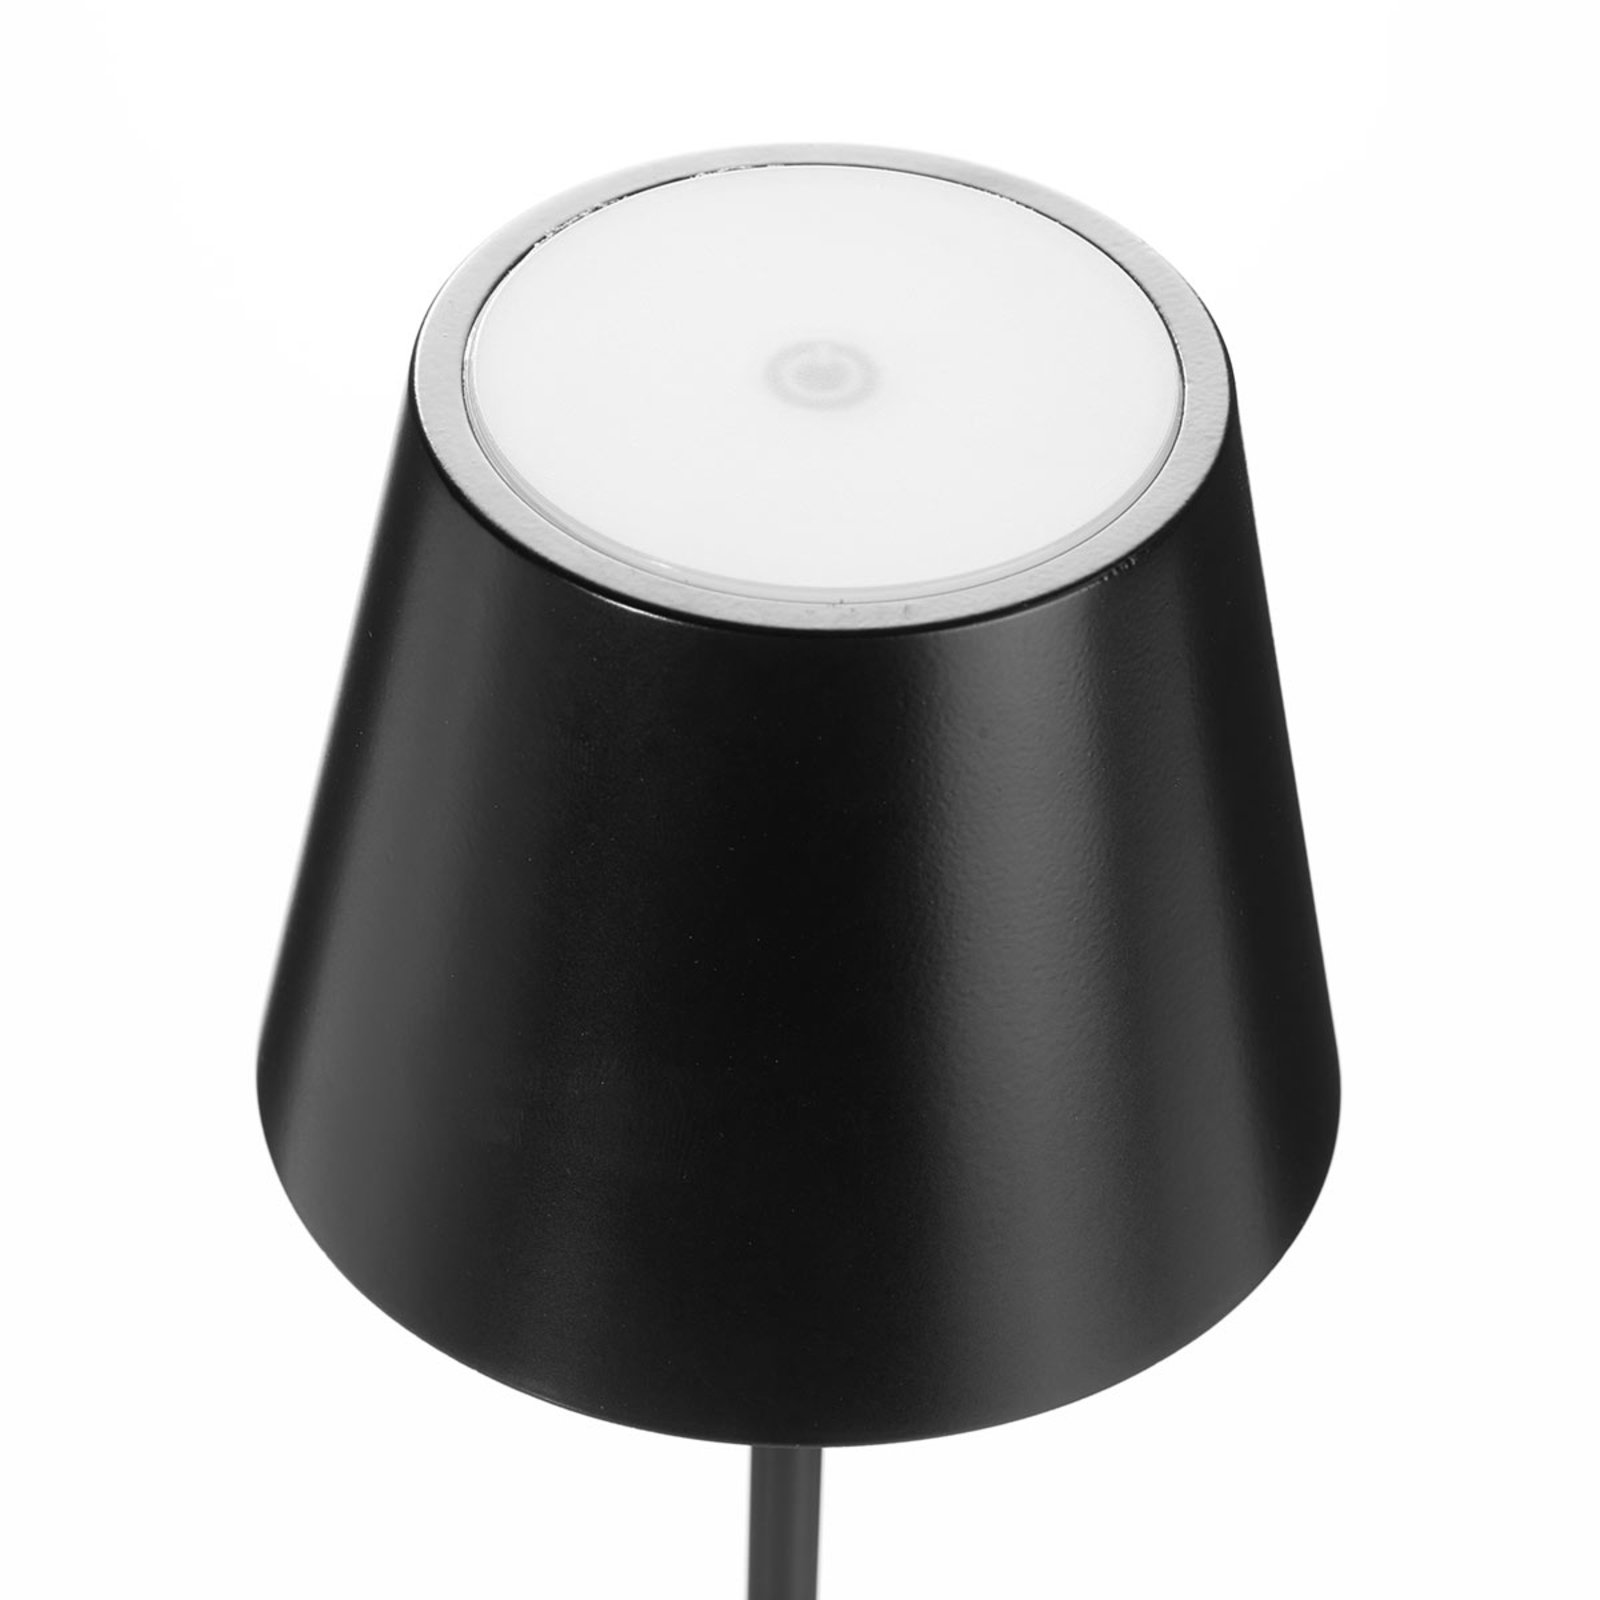 Lampa stołowa LED Toc ładowarka USB, IP54, czarna